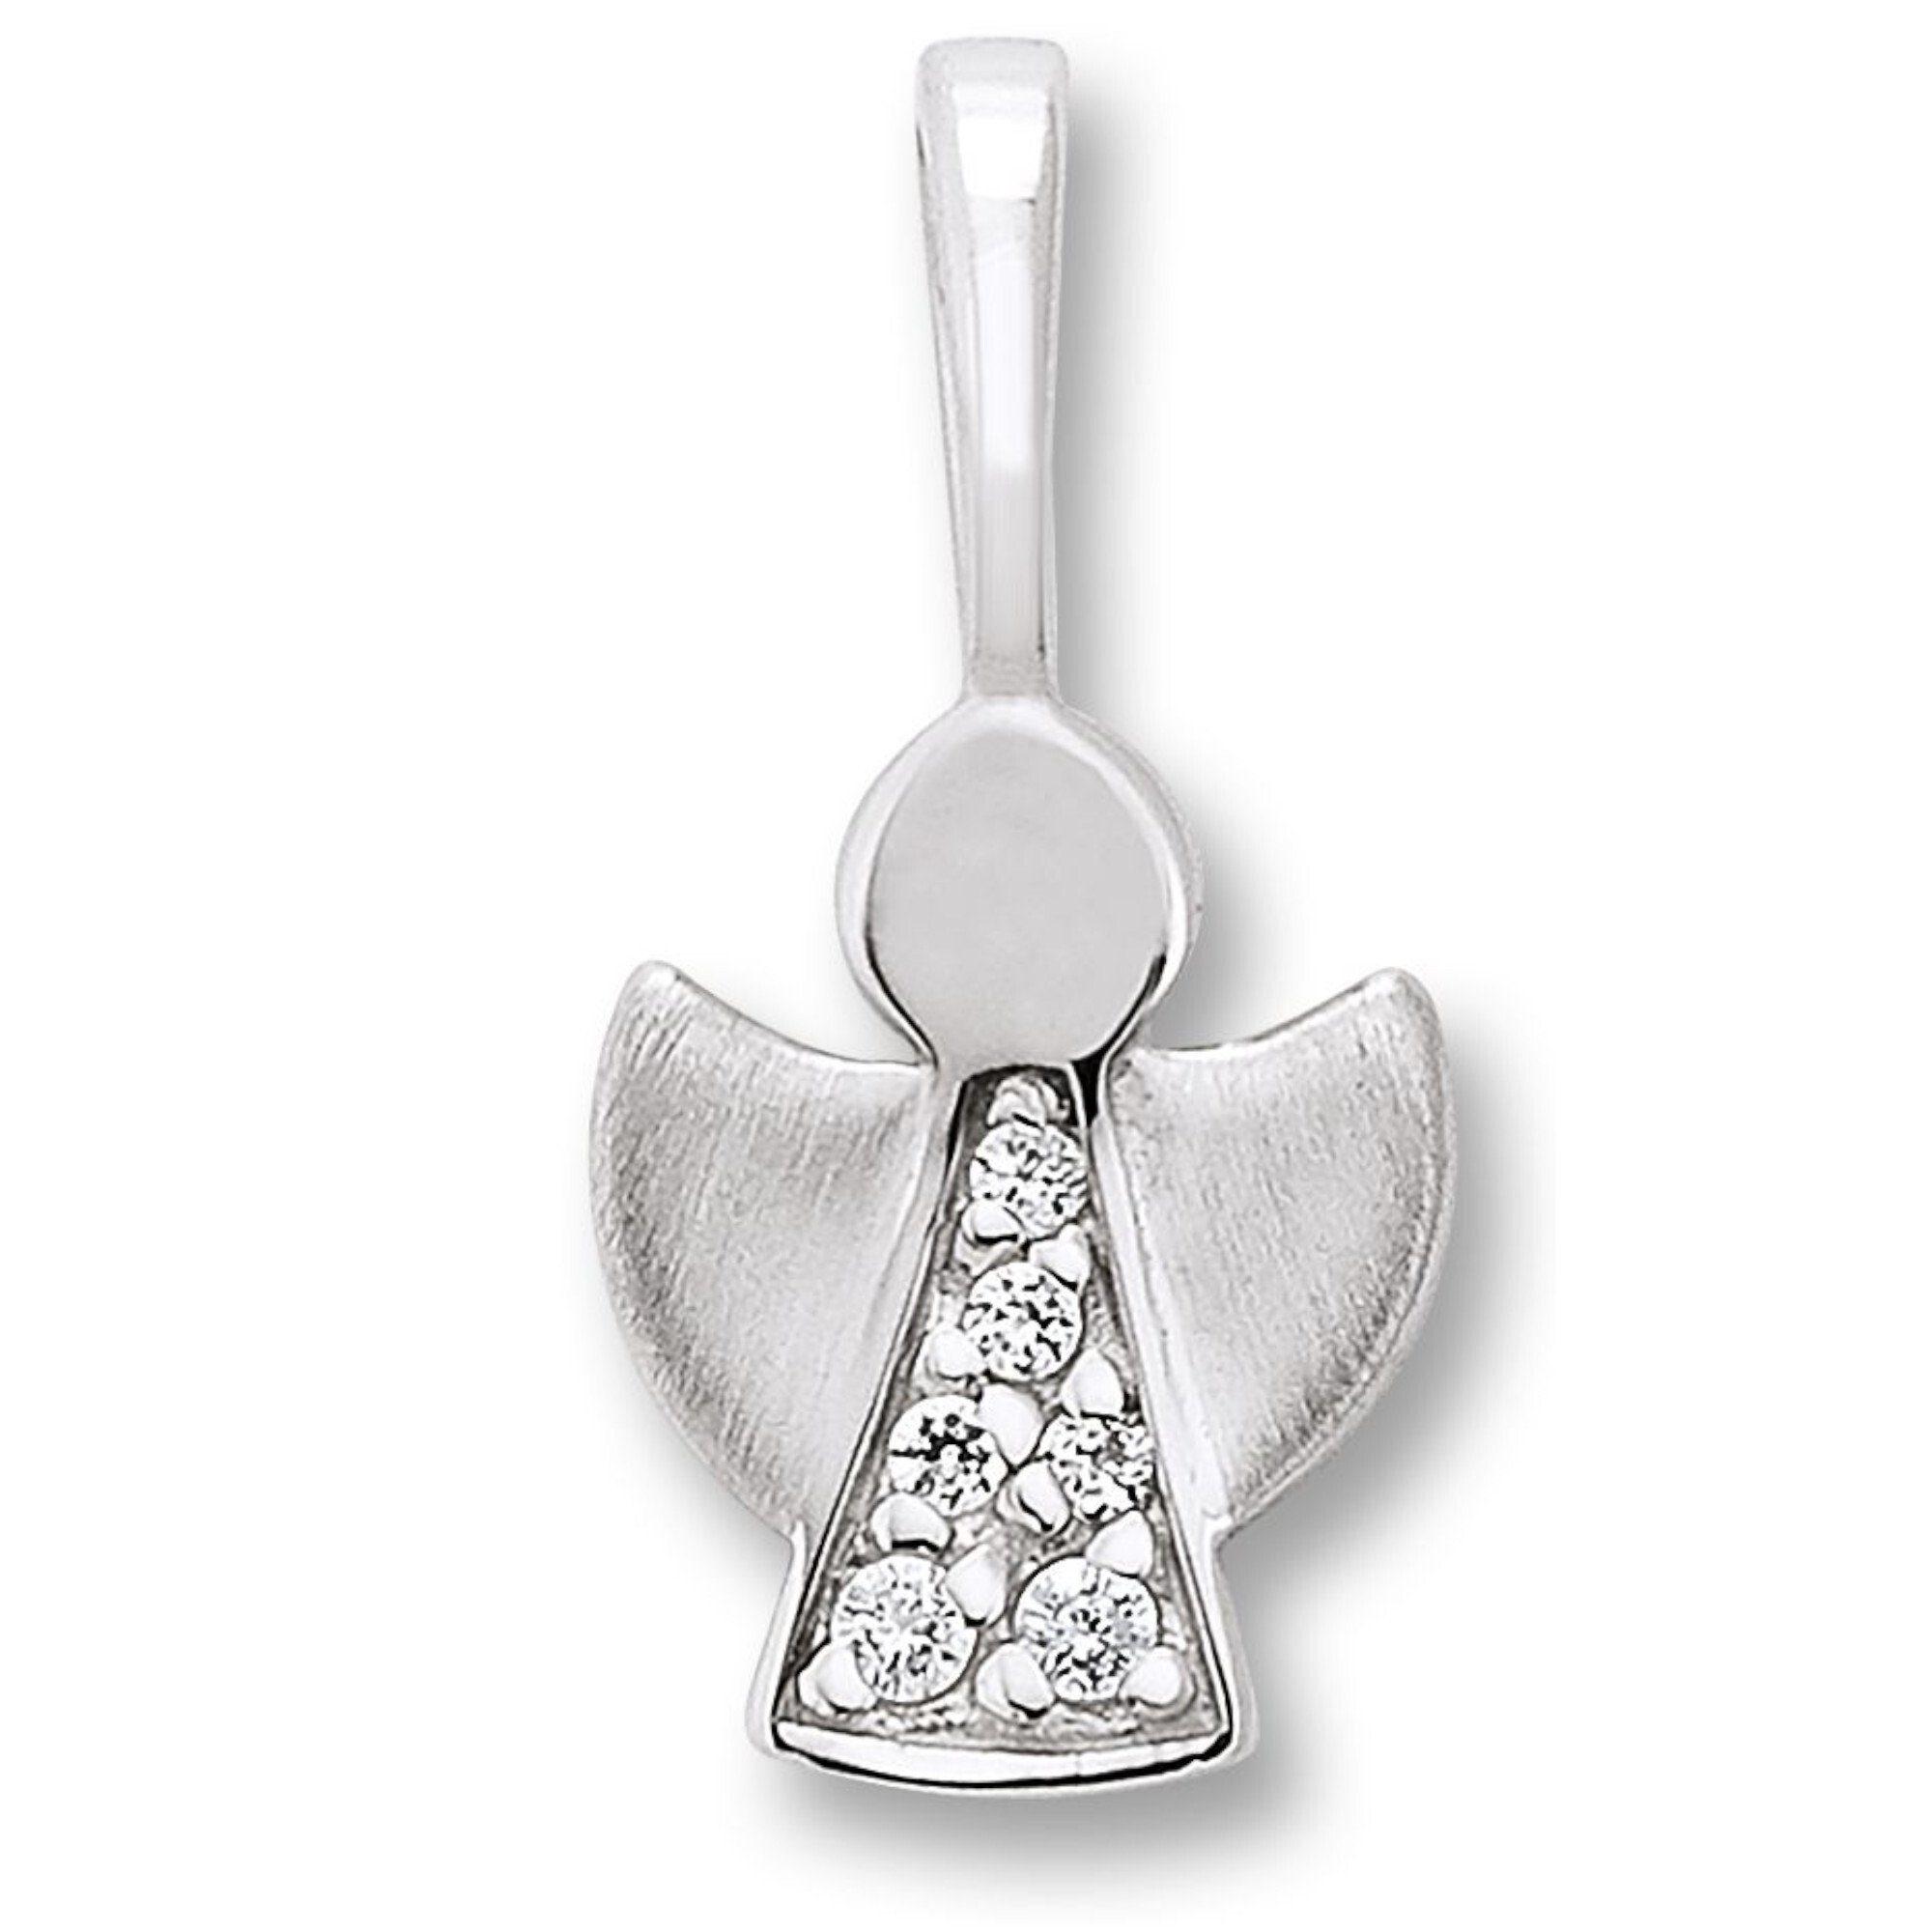 Damen Engel Kettenanhänger ONE Silber Silber, Engel aus Zirkonia ELEMENT 925 Schmuck Anhänger